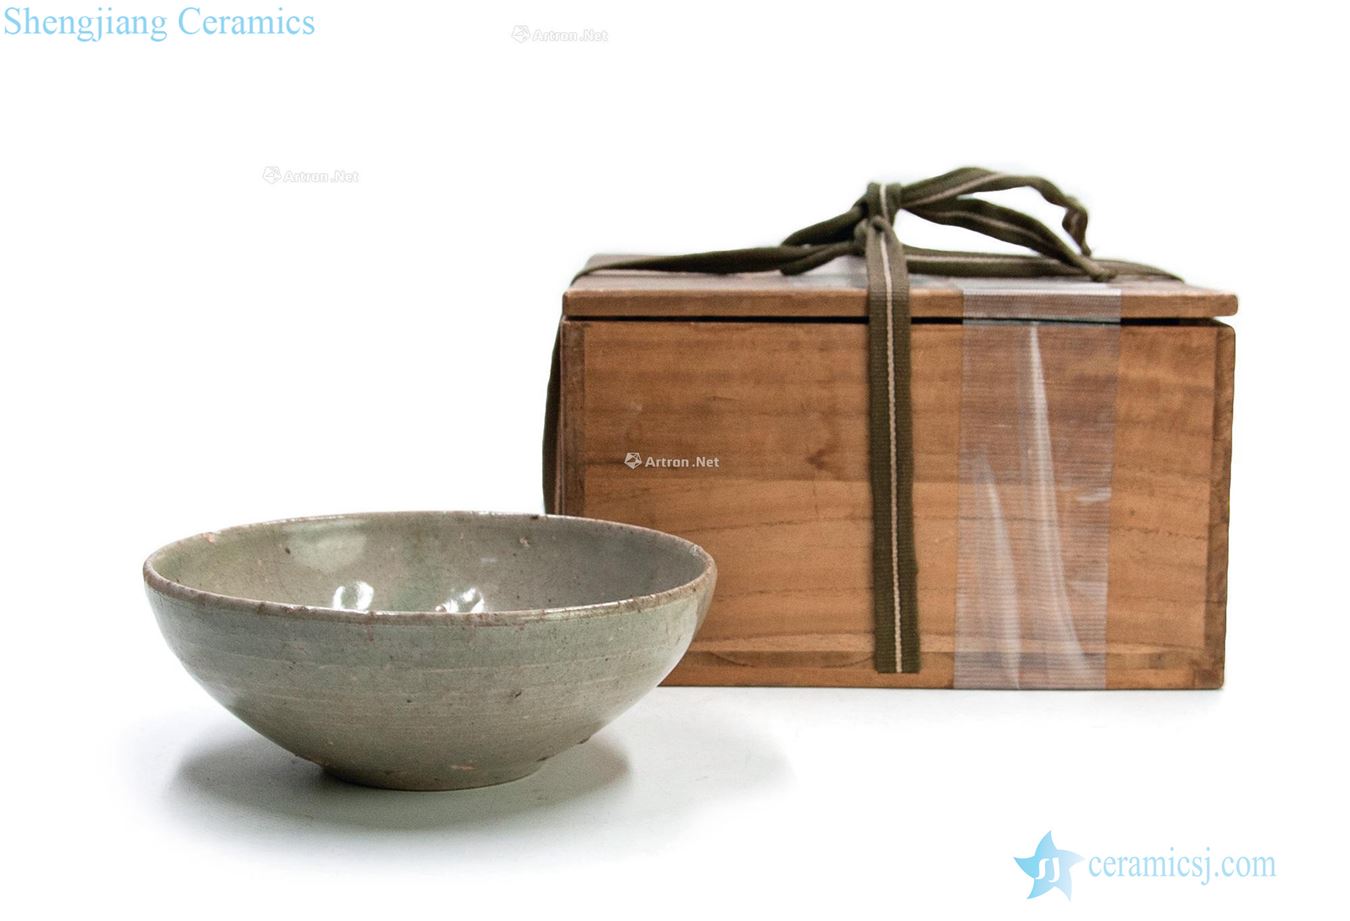 Koryo period (918-1392), celadon bowls